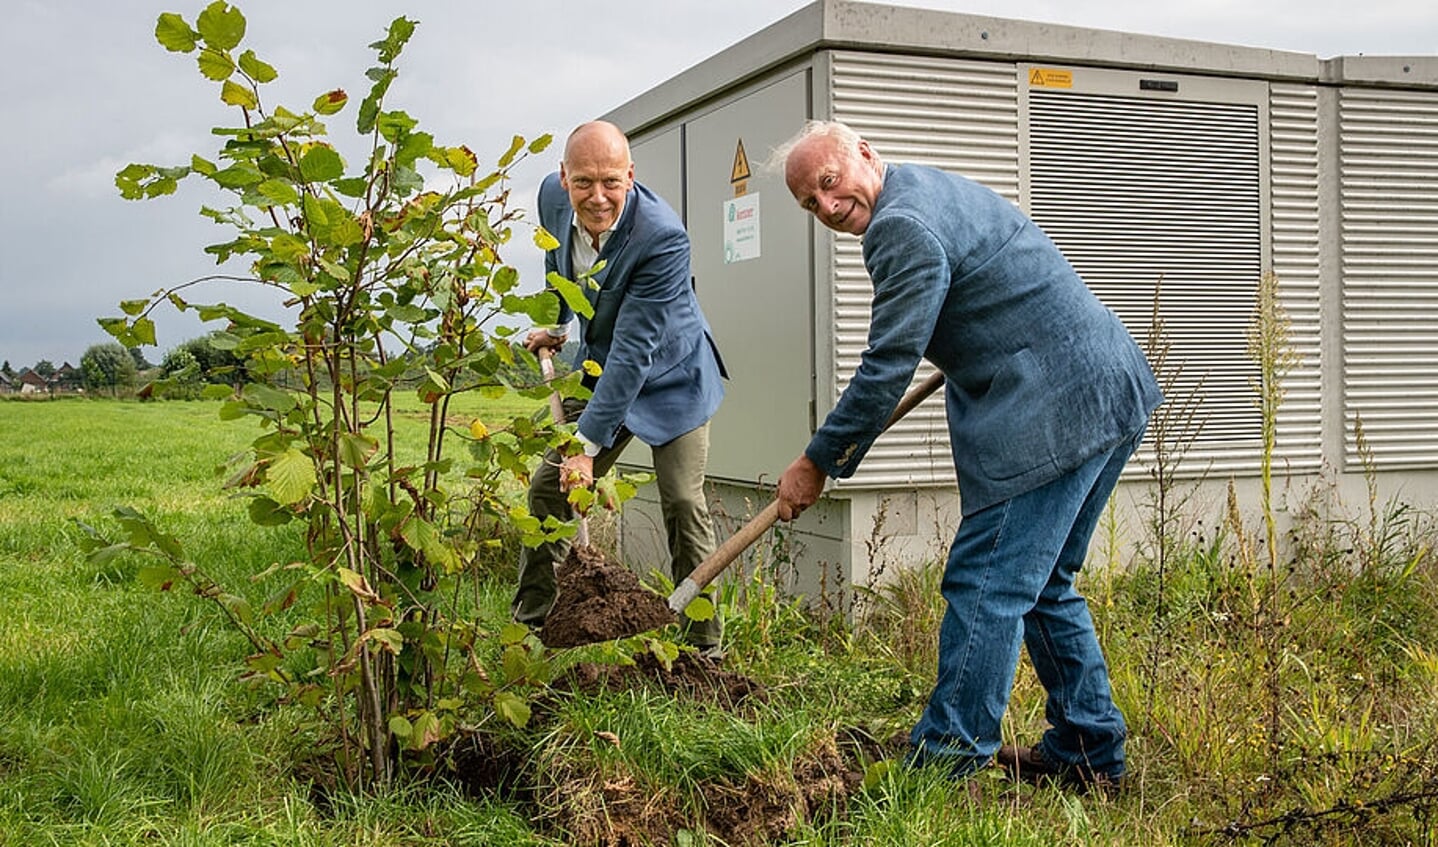 Samen met voorzitter Kees Donker van de coöperatie gaf wethouder Geert Ritsema het startsein voor de bouw door het planten van een hazelaar.